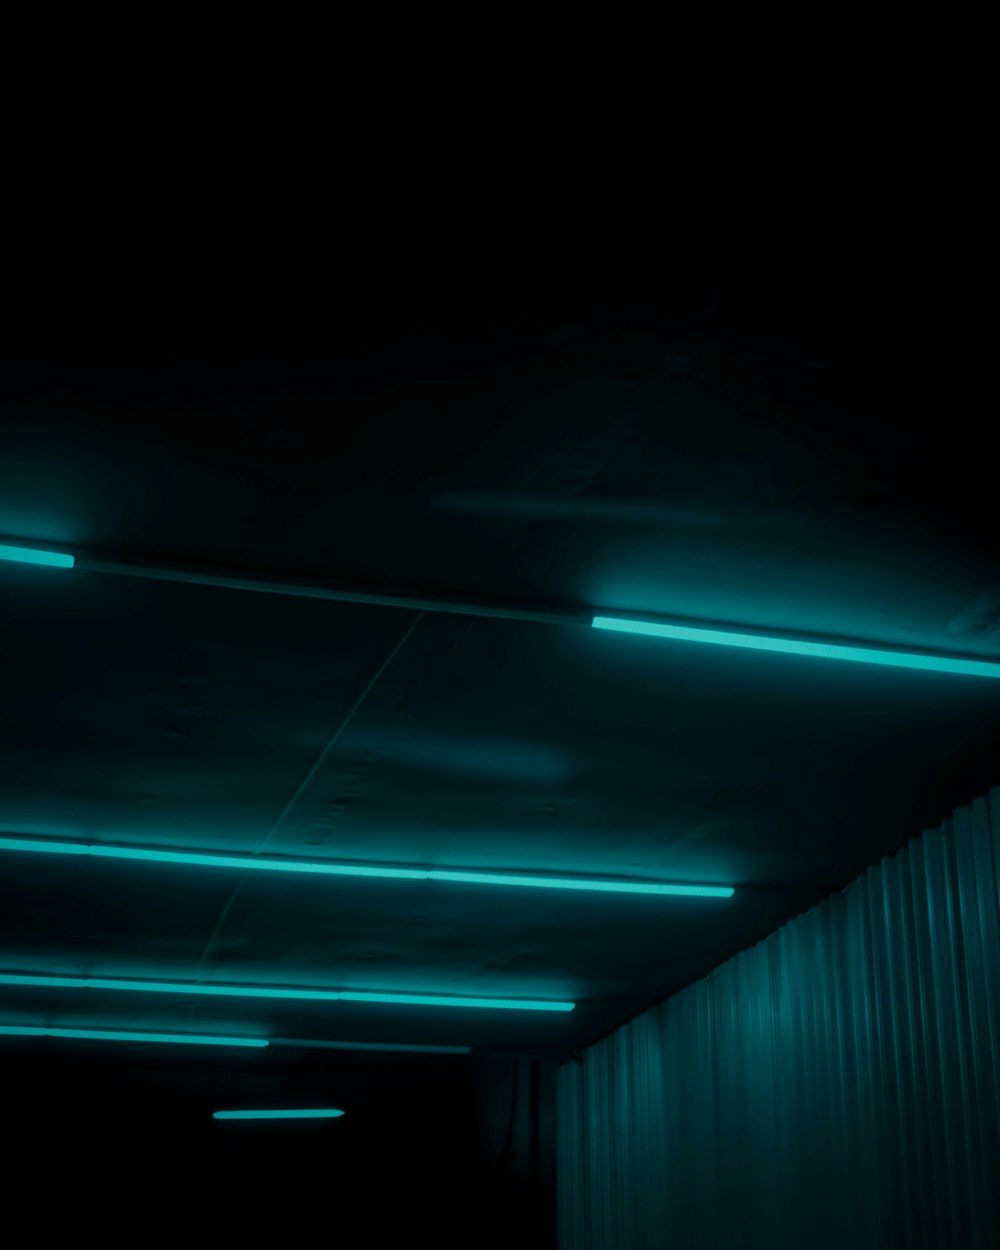 green light in a dark room